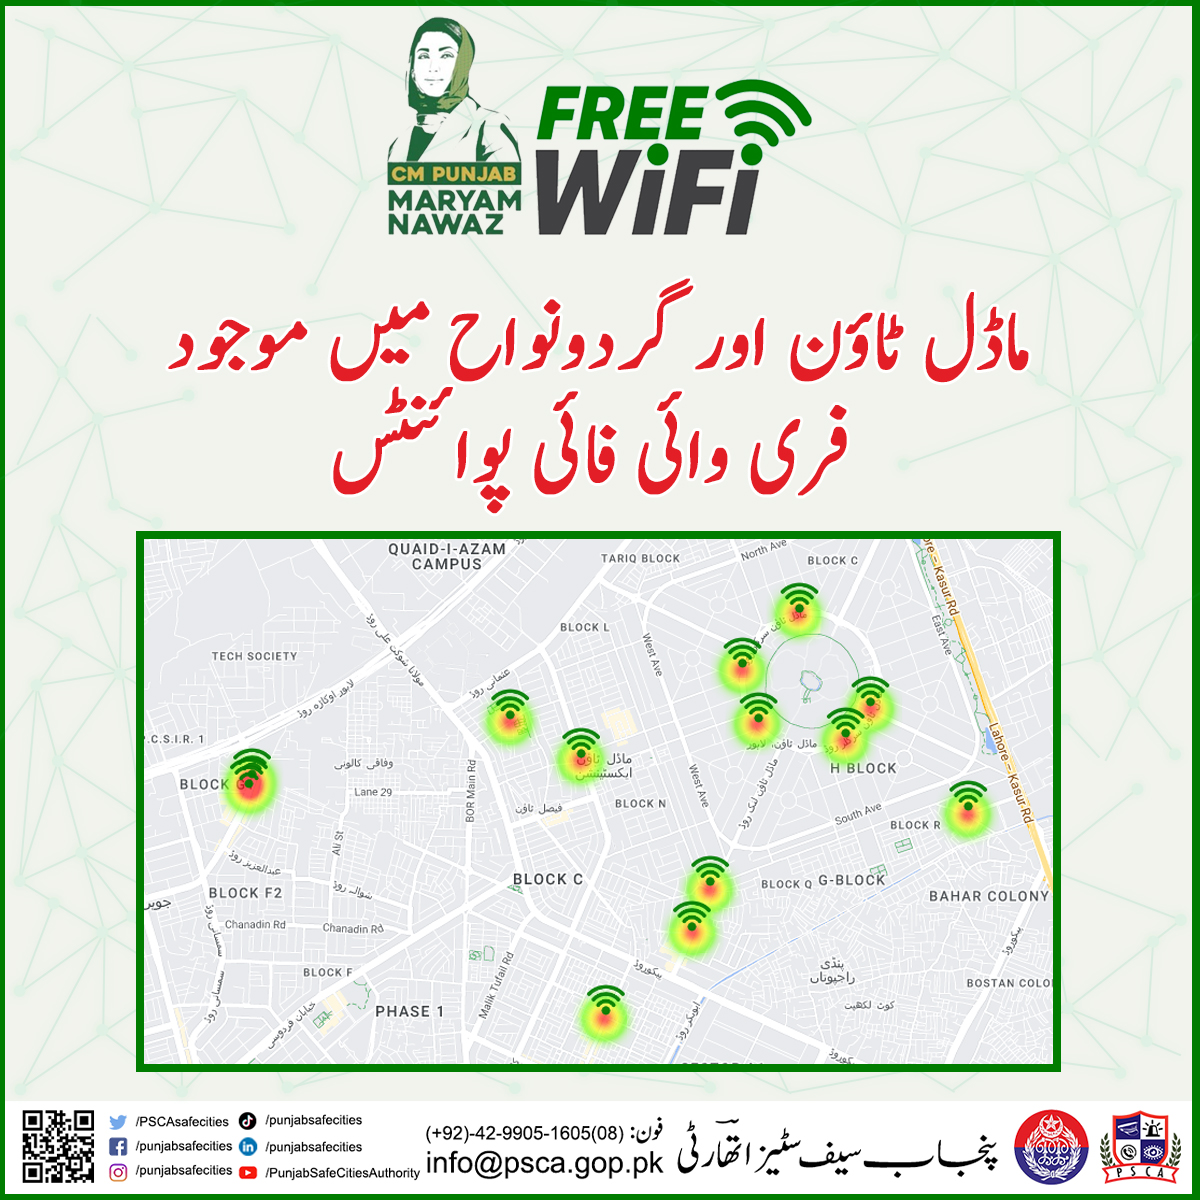 لاہور میں فری وائی فائی مقامات کی تعداد 50 سے بڑھا کر 100 کر دی گئی ہے ۔کسی بھی ایمرجنسی کی صورت میں فری وائی فائی سروس کا استعمال کریں۔ 
#safecity #PSCA #lahorepolice #punjabpolice #wifi #cmpunjab #policeinitiative